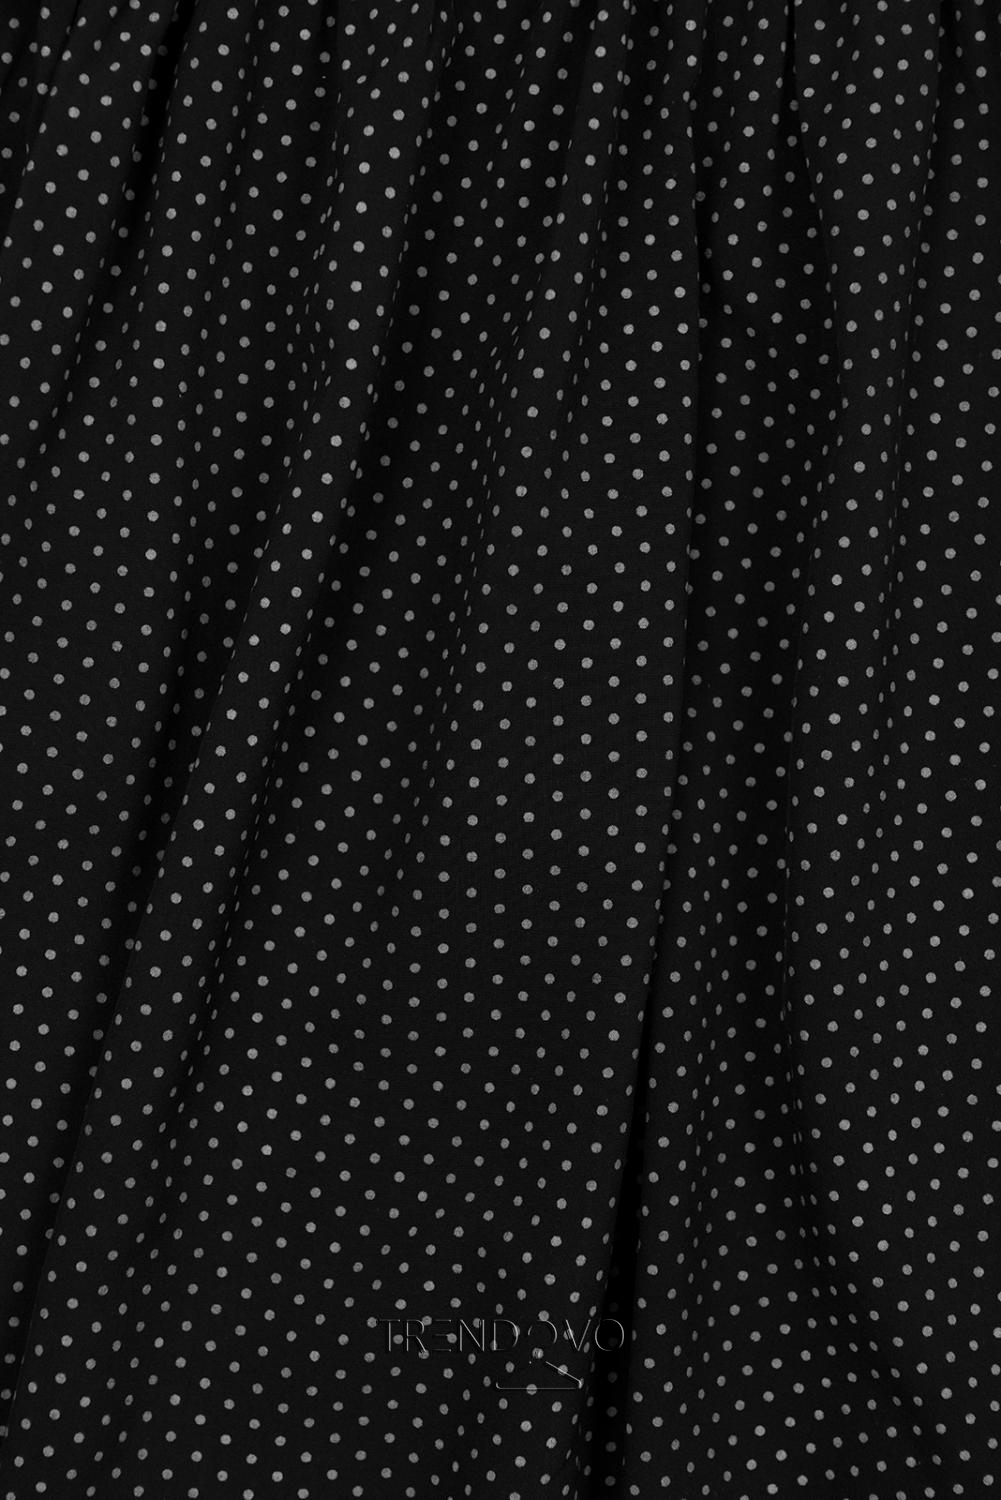 Černé retro puntíkované šaty s mašlí